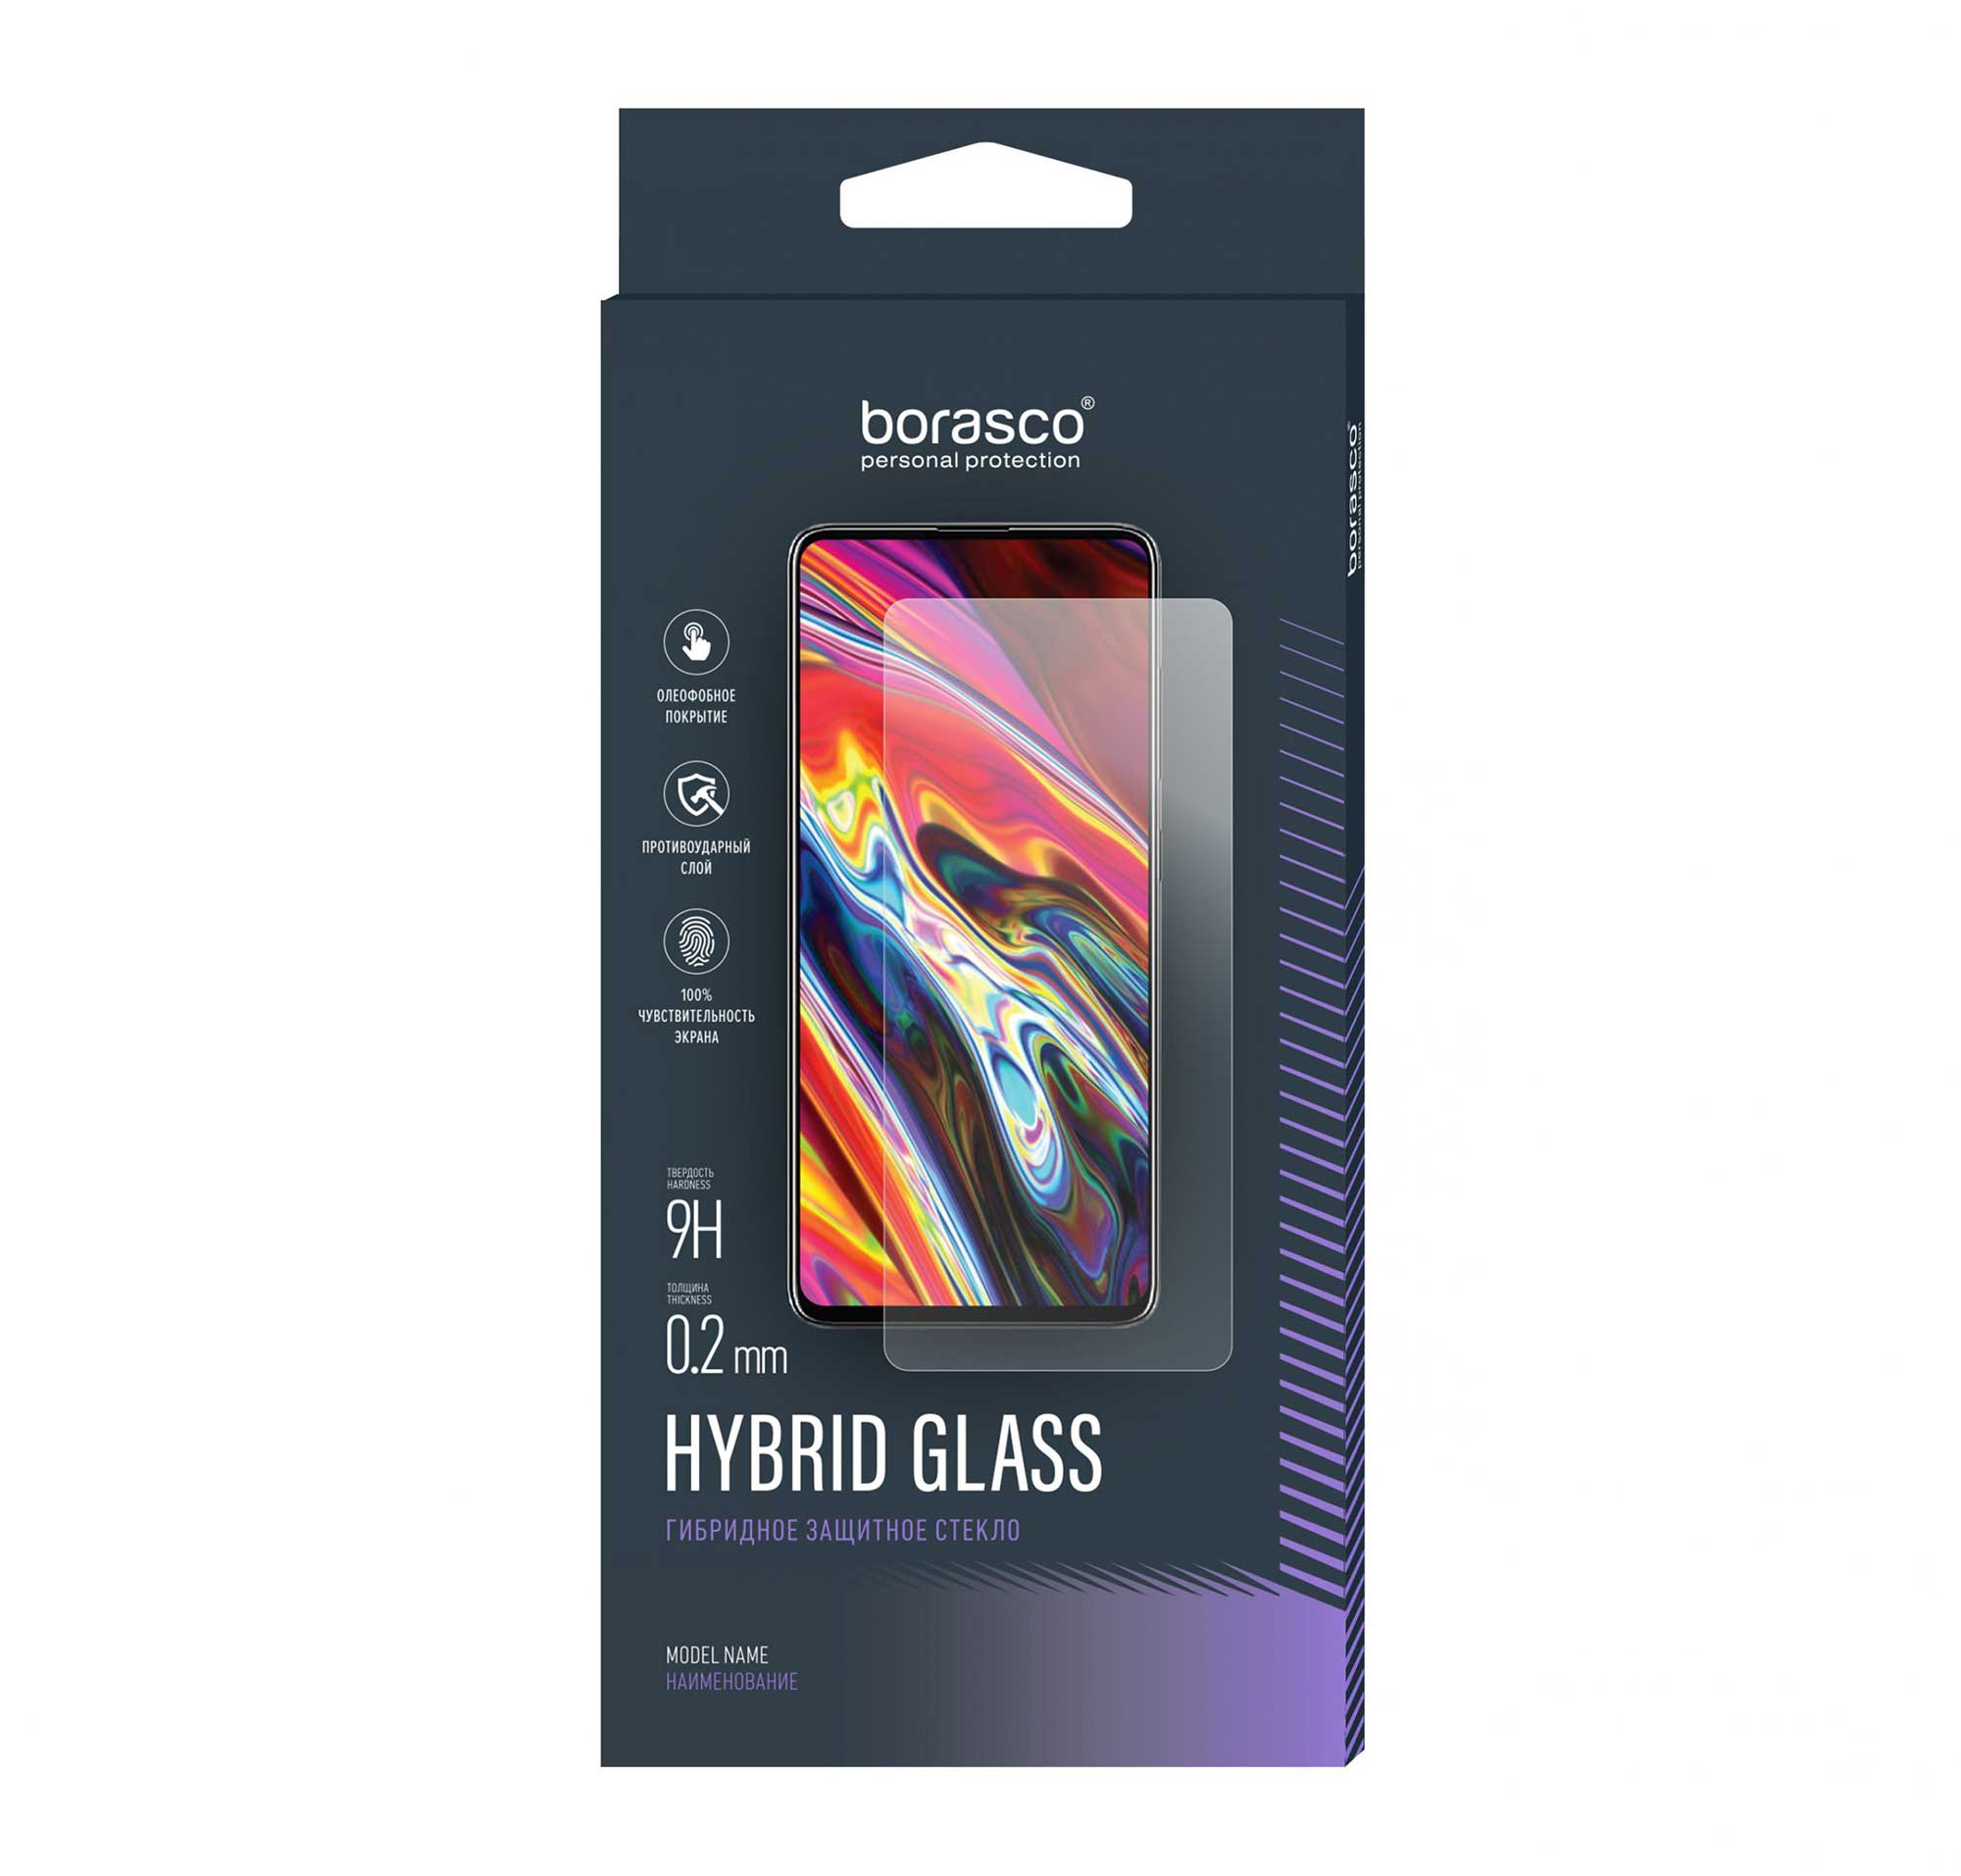 Защитное стекло BoraSCO Hybrid Glass для BQ 4030G NICE MINI защитное стекло для смартфона krutoff bq 4030g nice mini